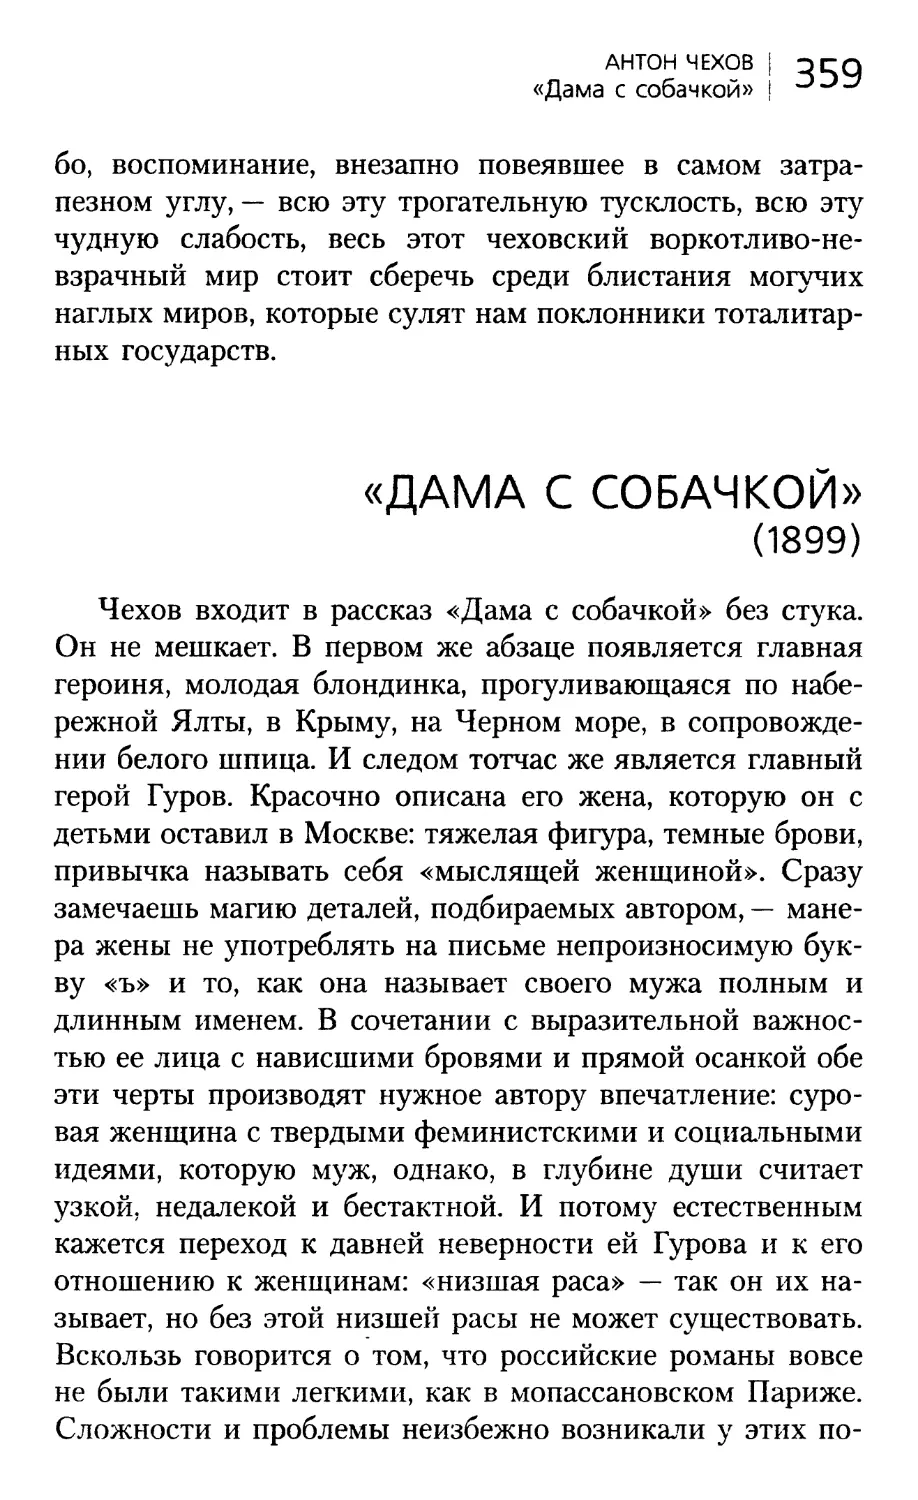 «ДАМА С СОБАЧКОЙ» (1899). Перевод И.Клягиной